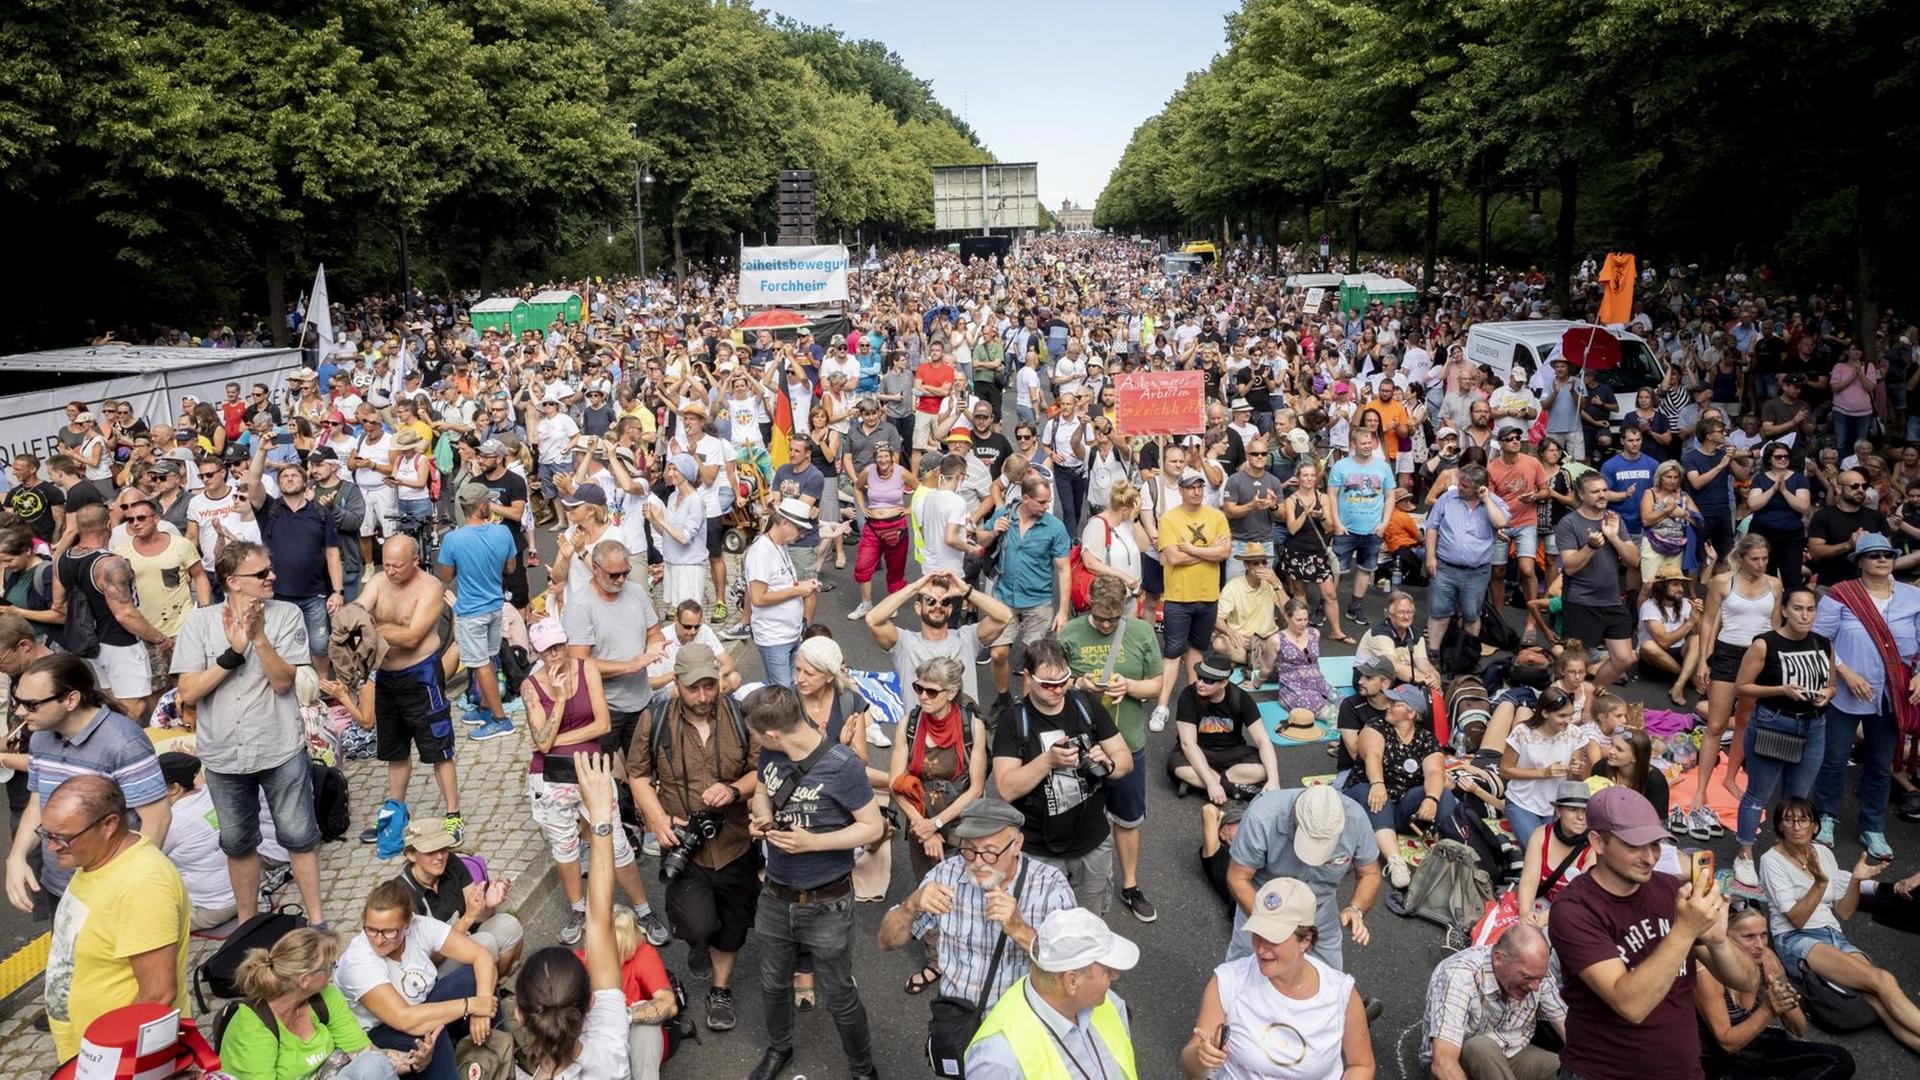 Dicht gedrängt und ohne die Abstandsregeln zu beachten, stehen Tausende bei einer Kundgebung gegen die Corona-Beschränkungen in Berlin.